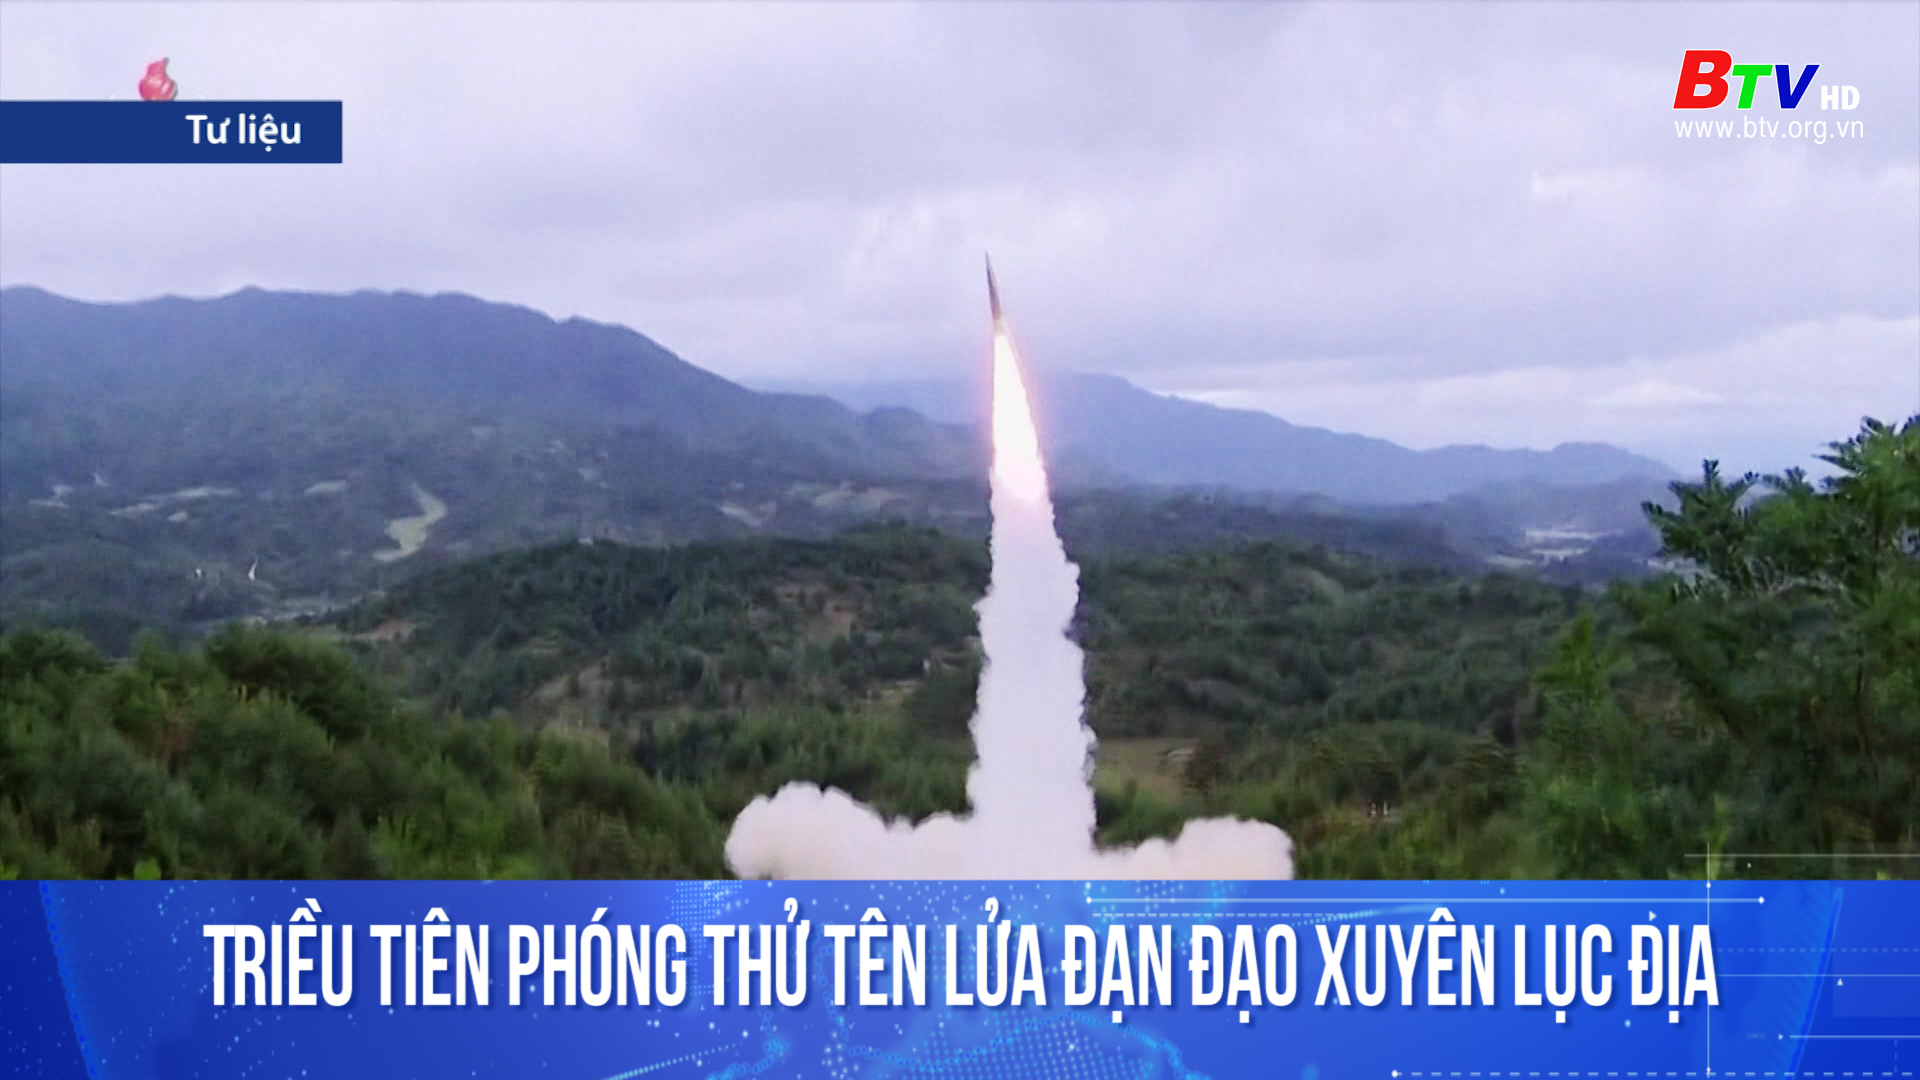 Triều Tiên phóng thử tên lửa đạn đạo xuyên lục địa